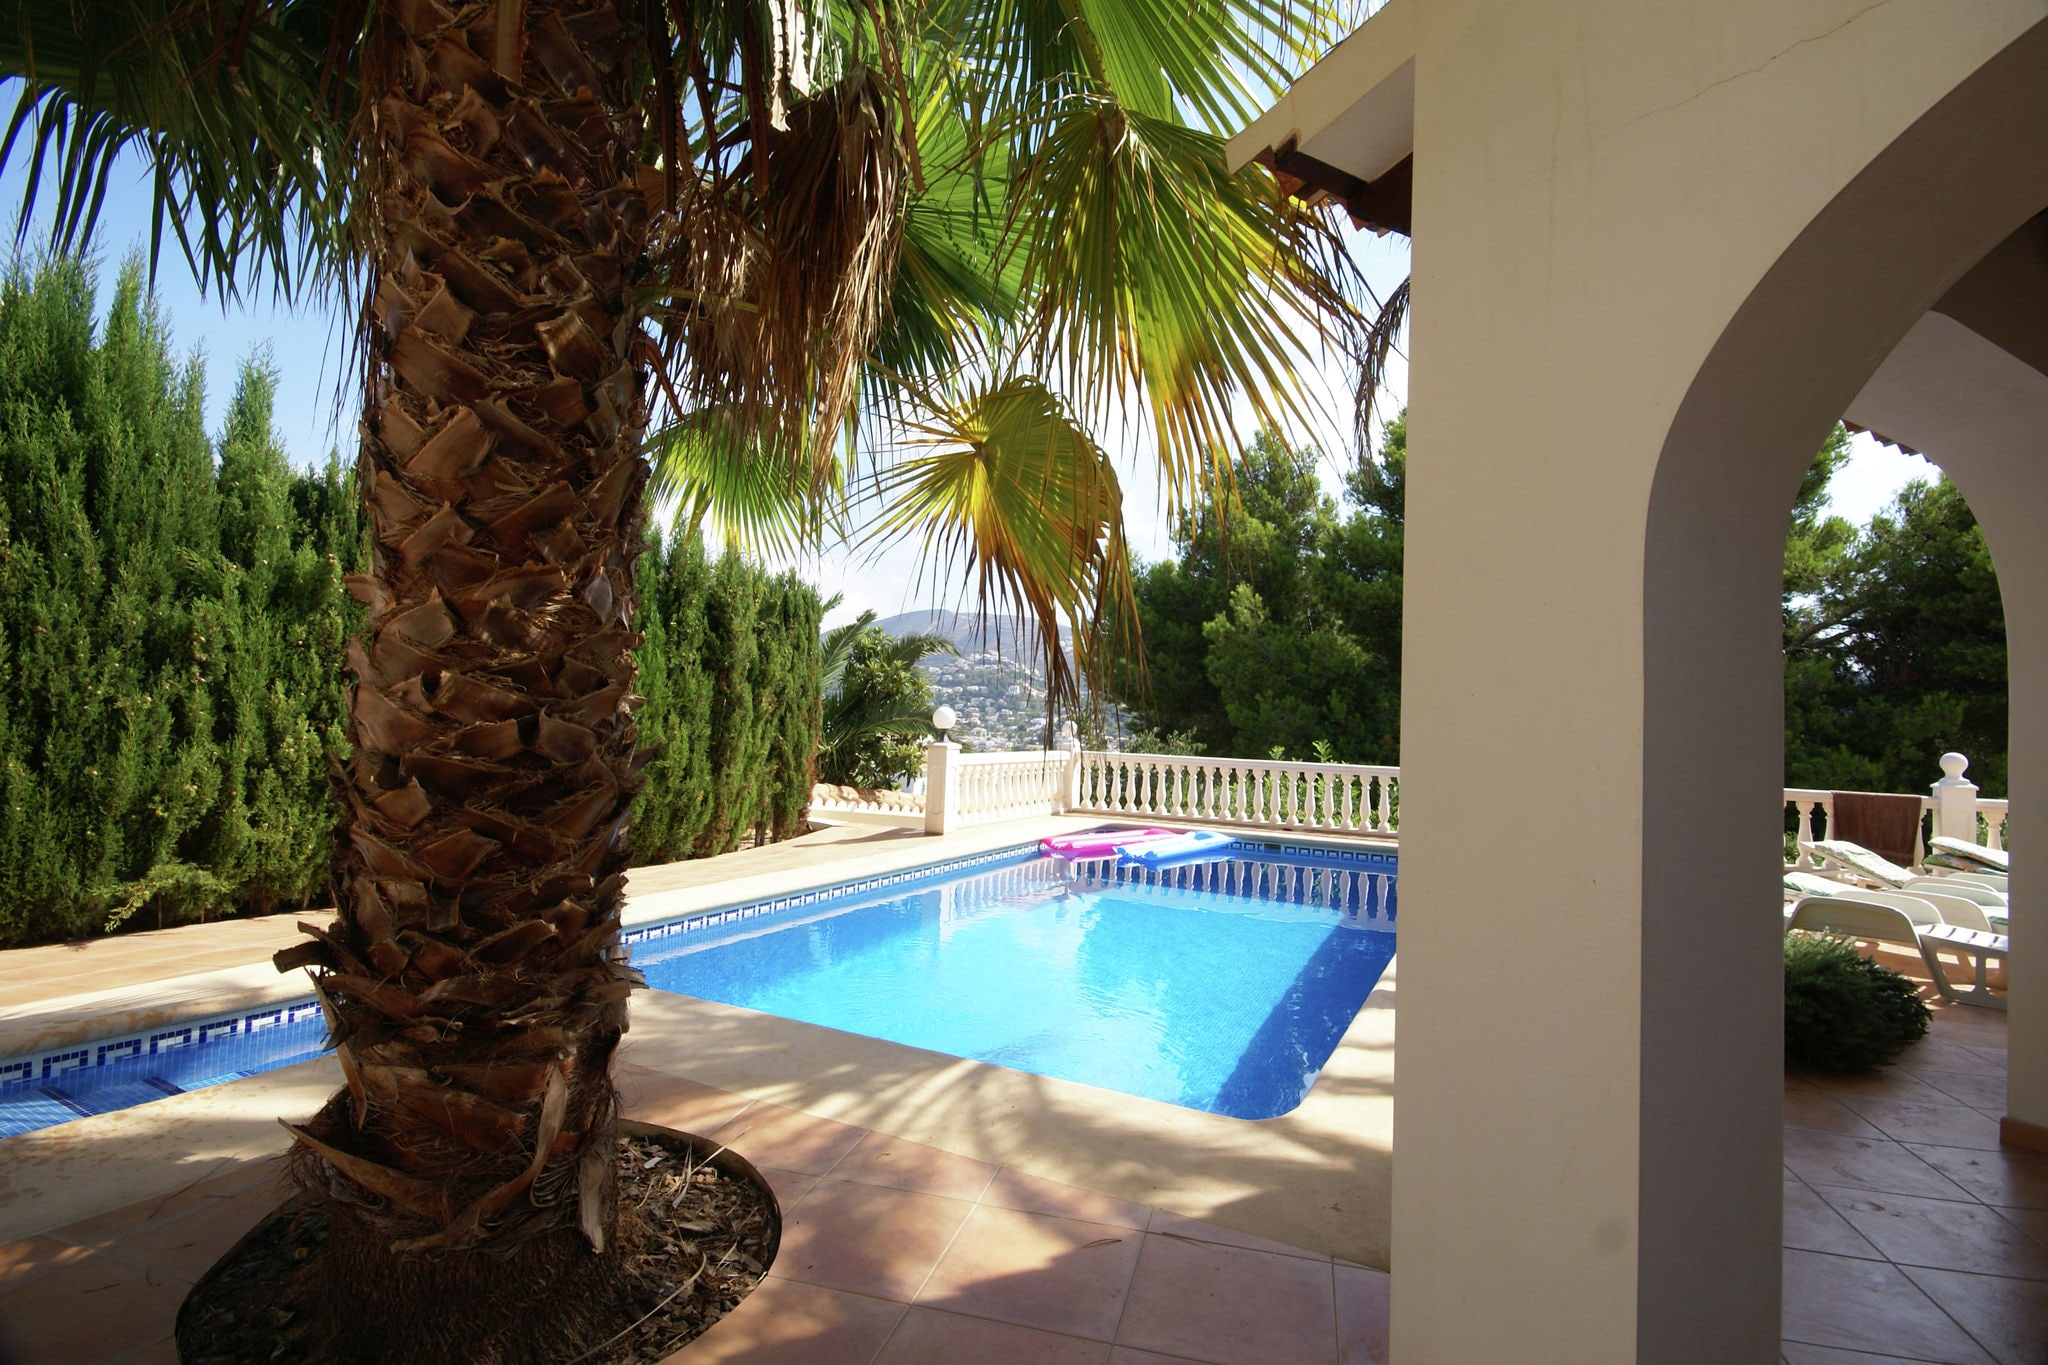 Moderne, luxe villa in Moraira met 4 slaapkamers, privé-zwembad en veel privacy